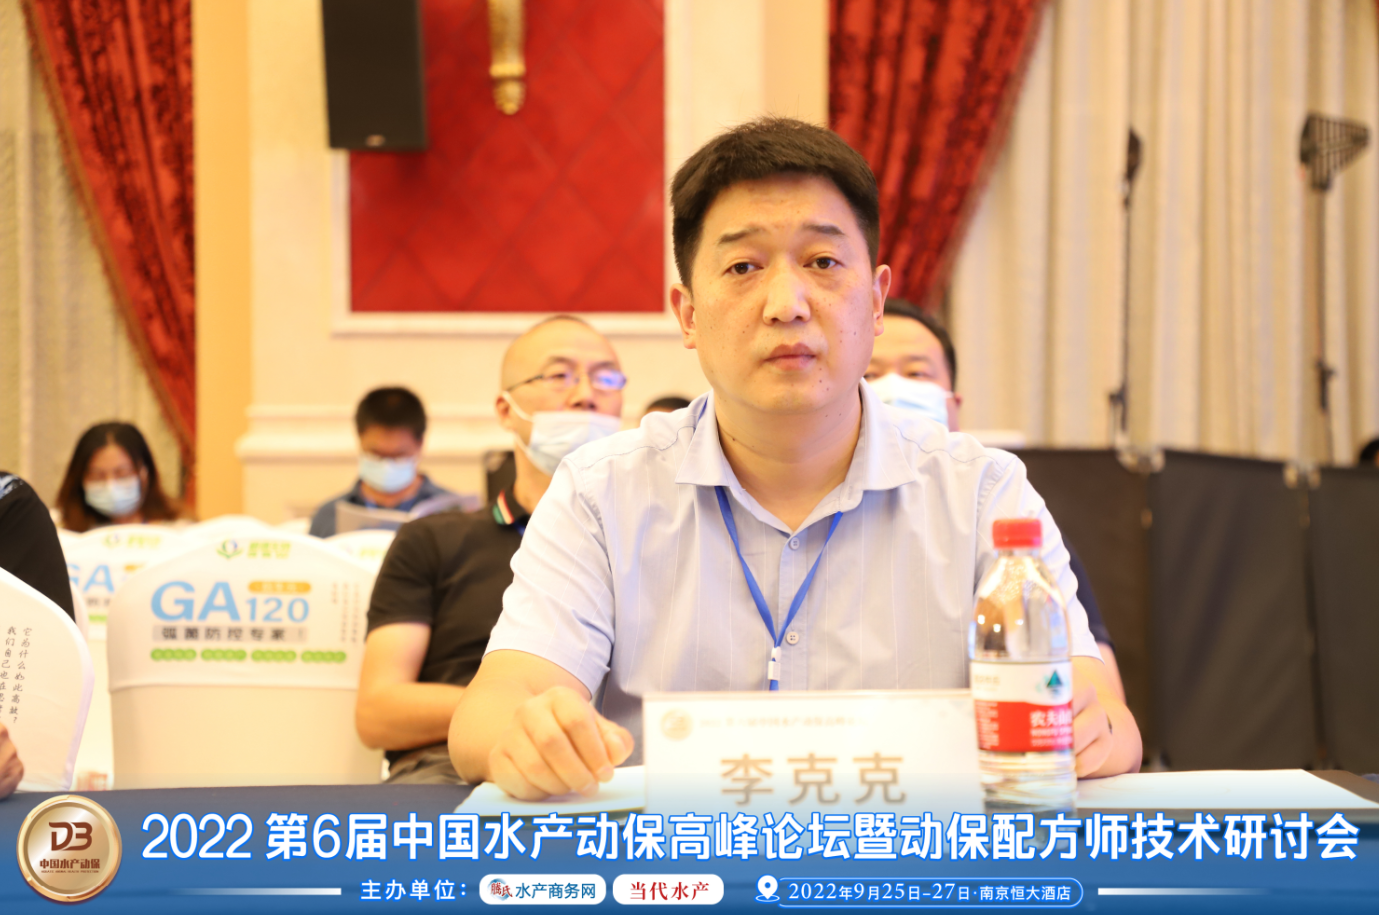  2022年9月中国水产动保高峰论坛暨动保配方师技术研讨会